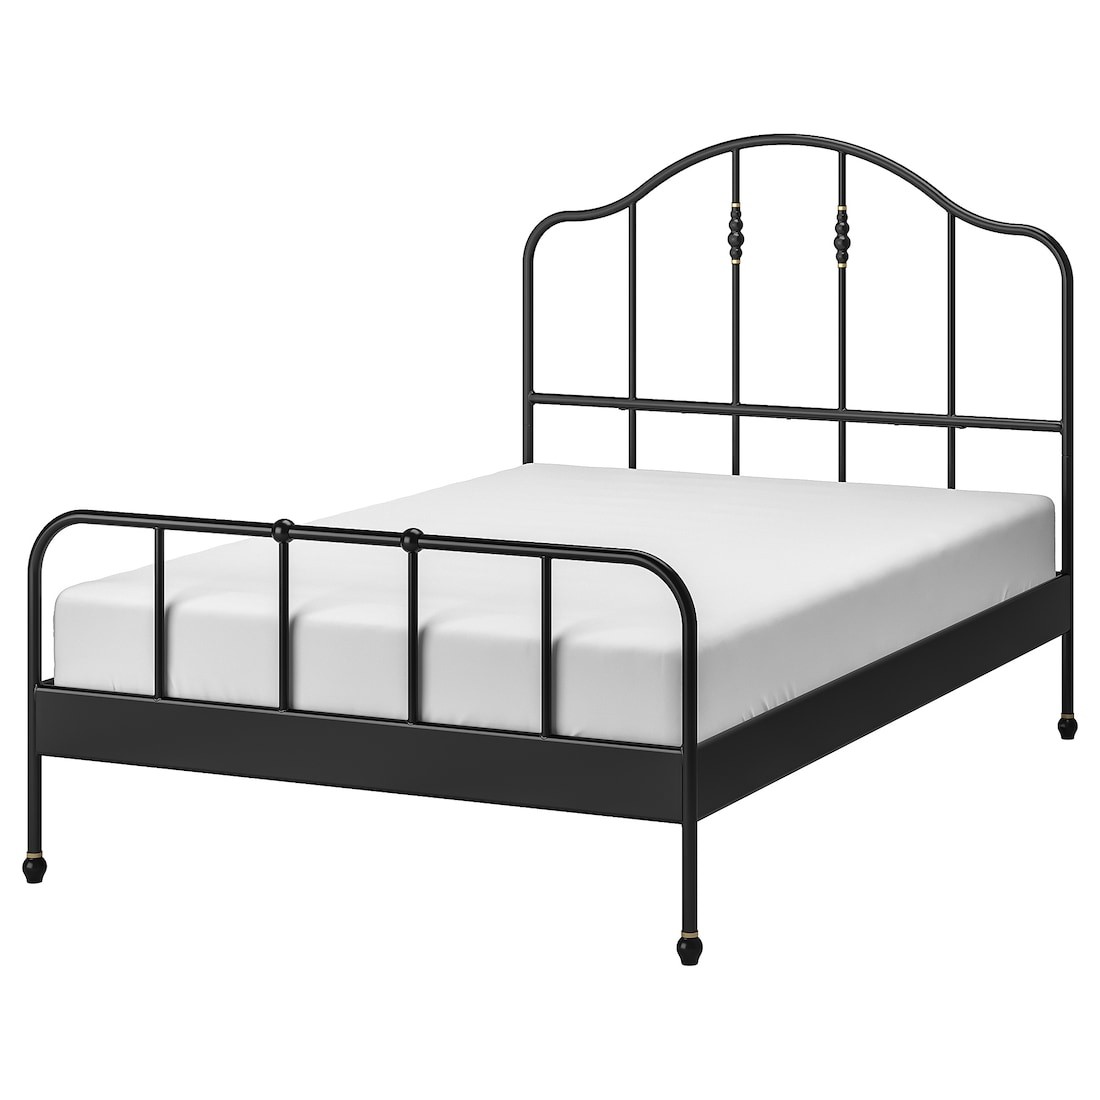 IKEA SAGSTUA САГСТУА Кровать двуспальная, черный / Lönset, 140x200 см 09268909 092.689.09